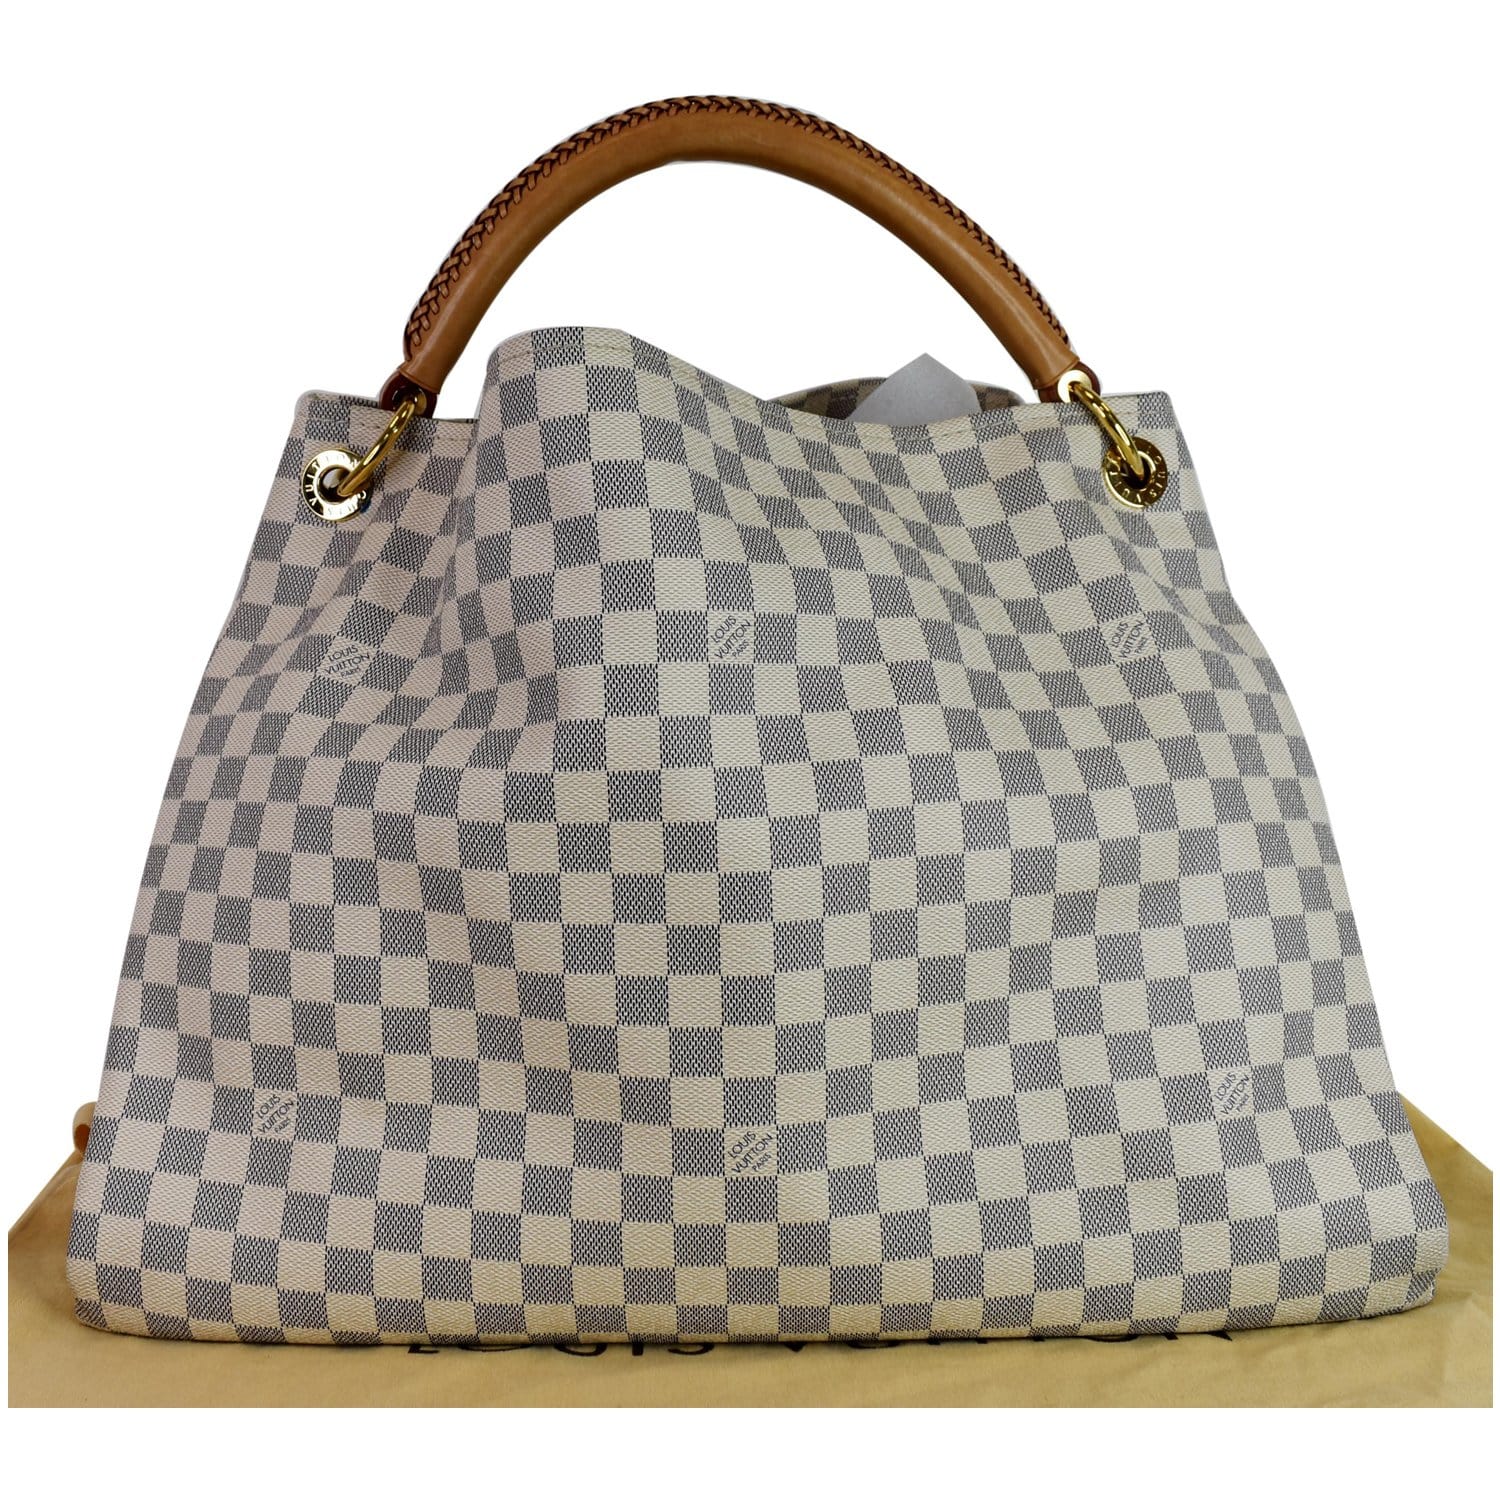 Louis Vuitton, Bags, Authentic Louis Vuitton Damier Ebene Artsy Mm Bag